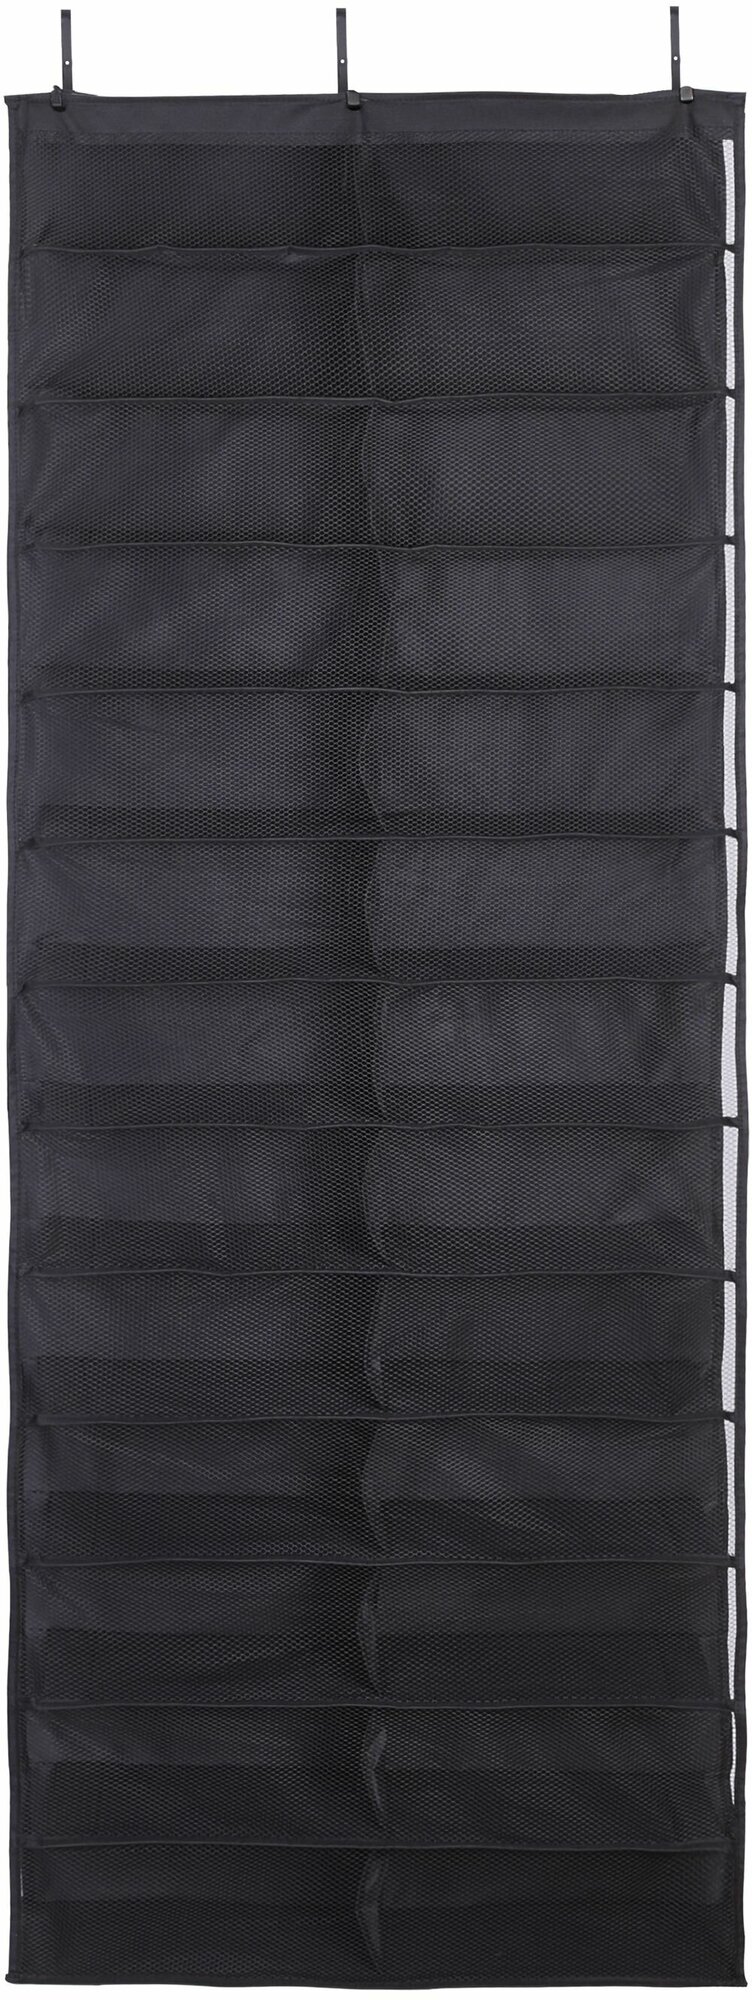 Органайзер для обуви подвесной Spaceo 59x15.2x160 см полиэстер цвет чёрный